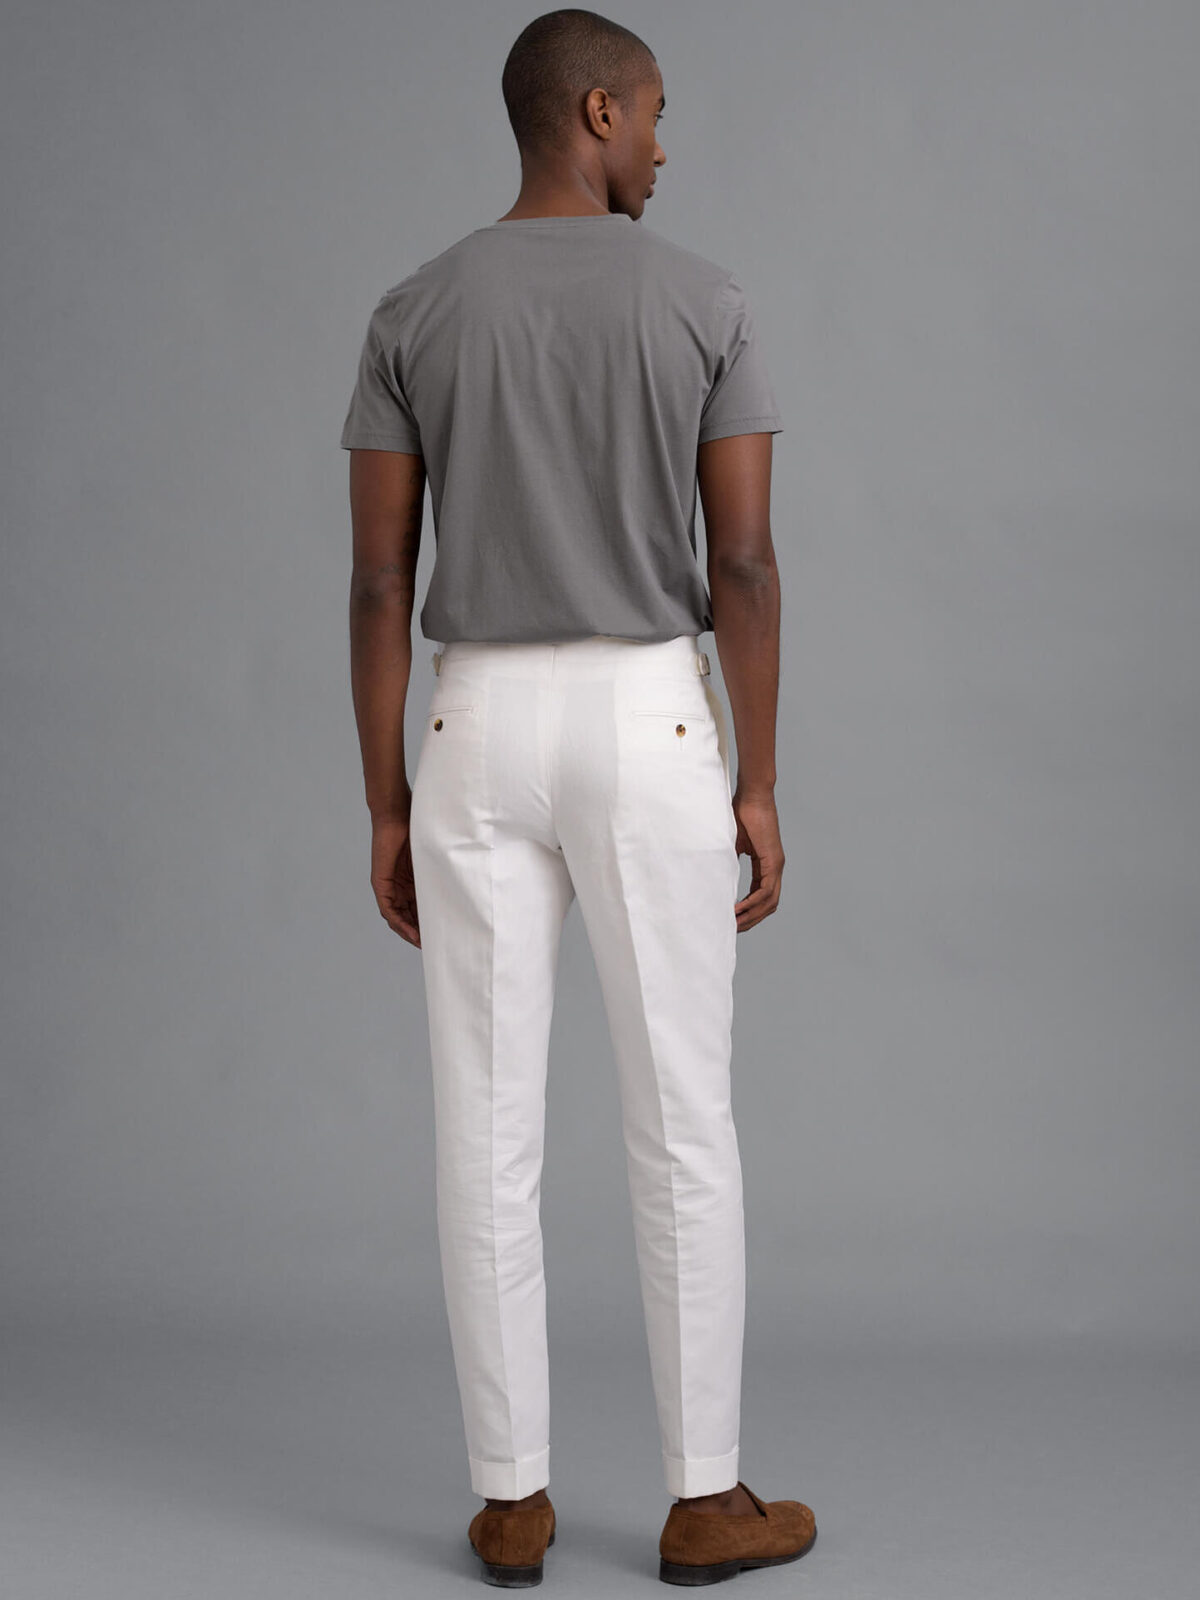 White - Linen Pants : Made To Measure Custom Jeans For Men & Women